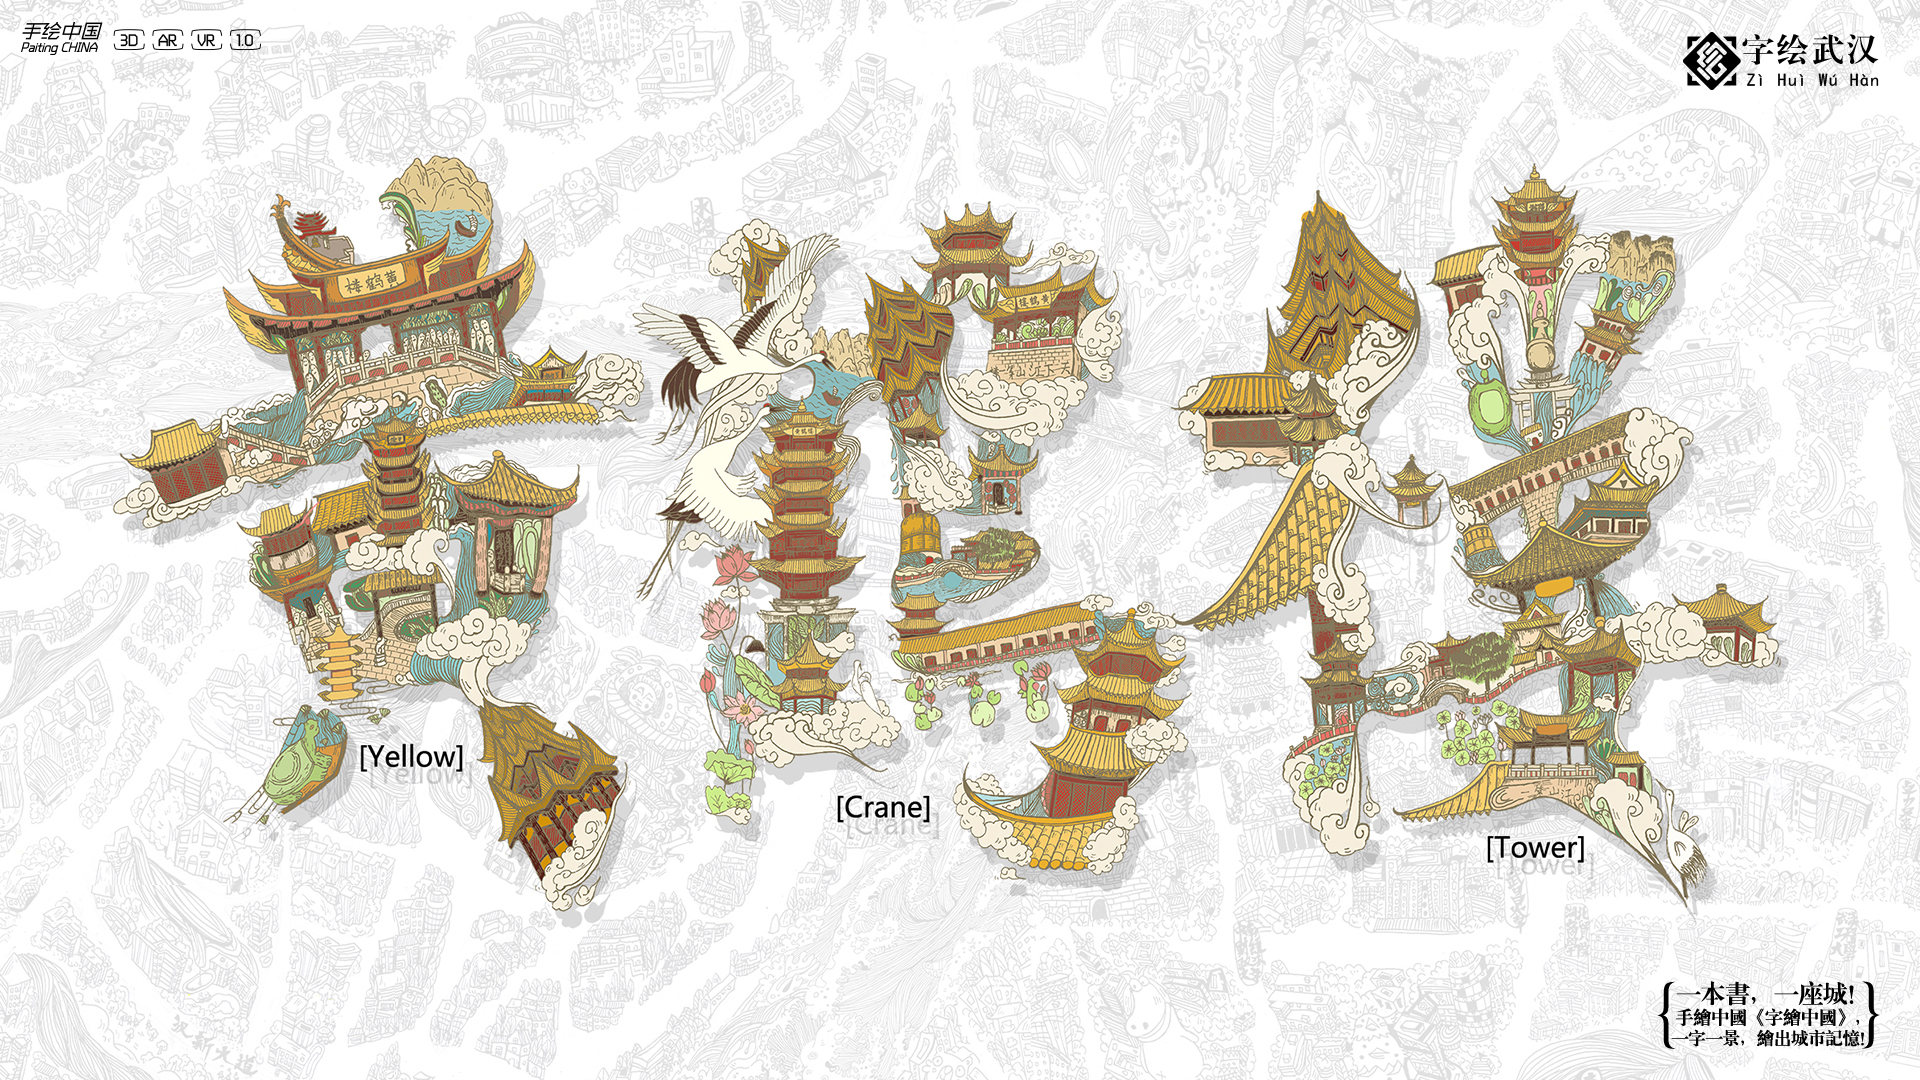 【字绘武汉】一字一景绘出城市记忆 - 视觉中国设计师